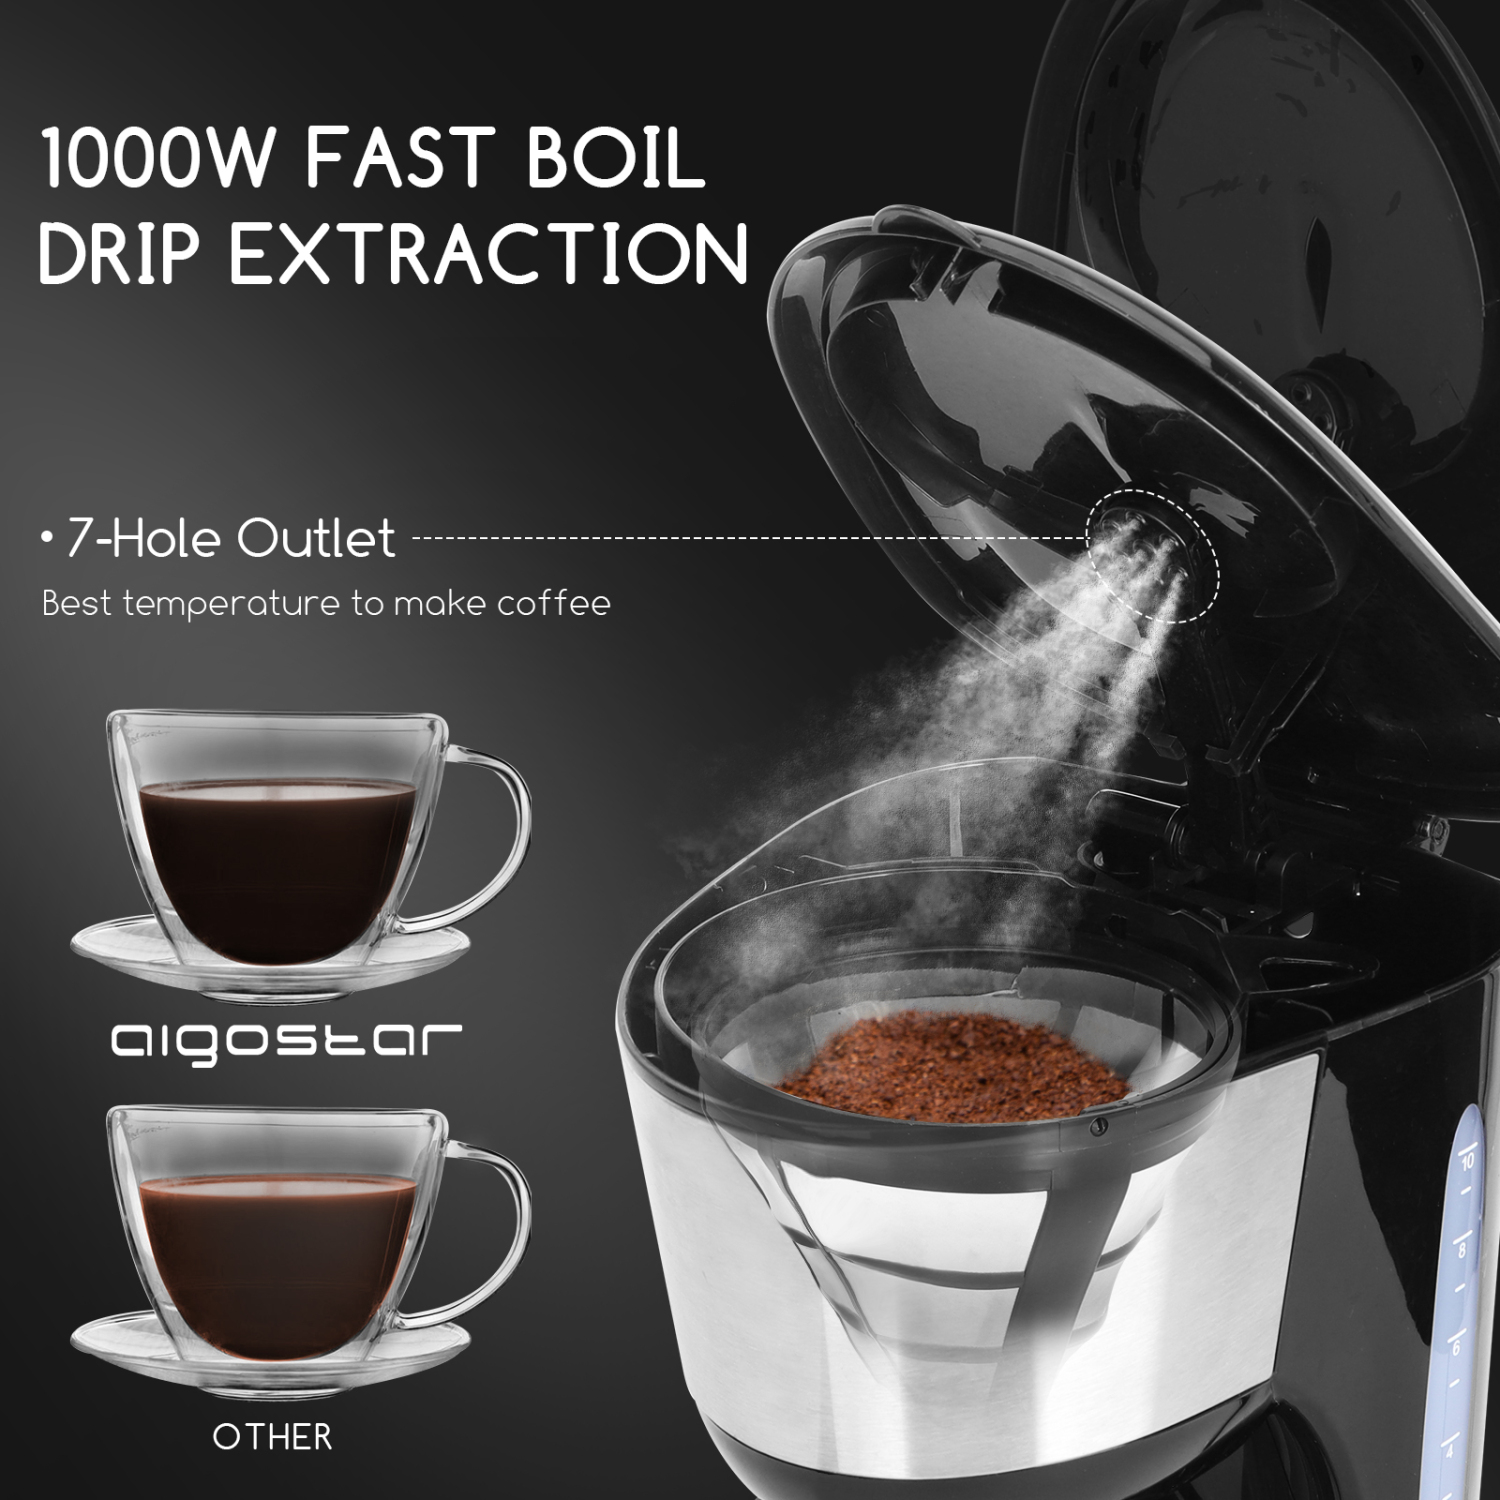 Aigostar Chocolate 30HIK – Cafetière à filtre, 1000 watts, capacité de 1,25 litres, sans BPA, filtre permanent lavable et fonction maintenir au chaud. Couleur noir. Design exclusif.